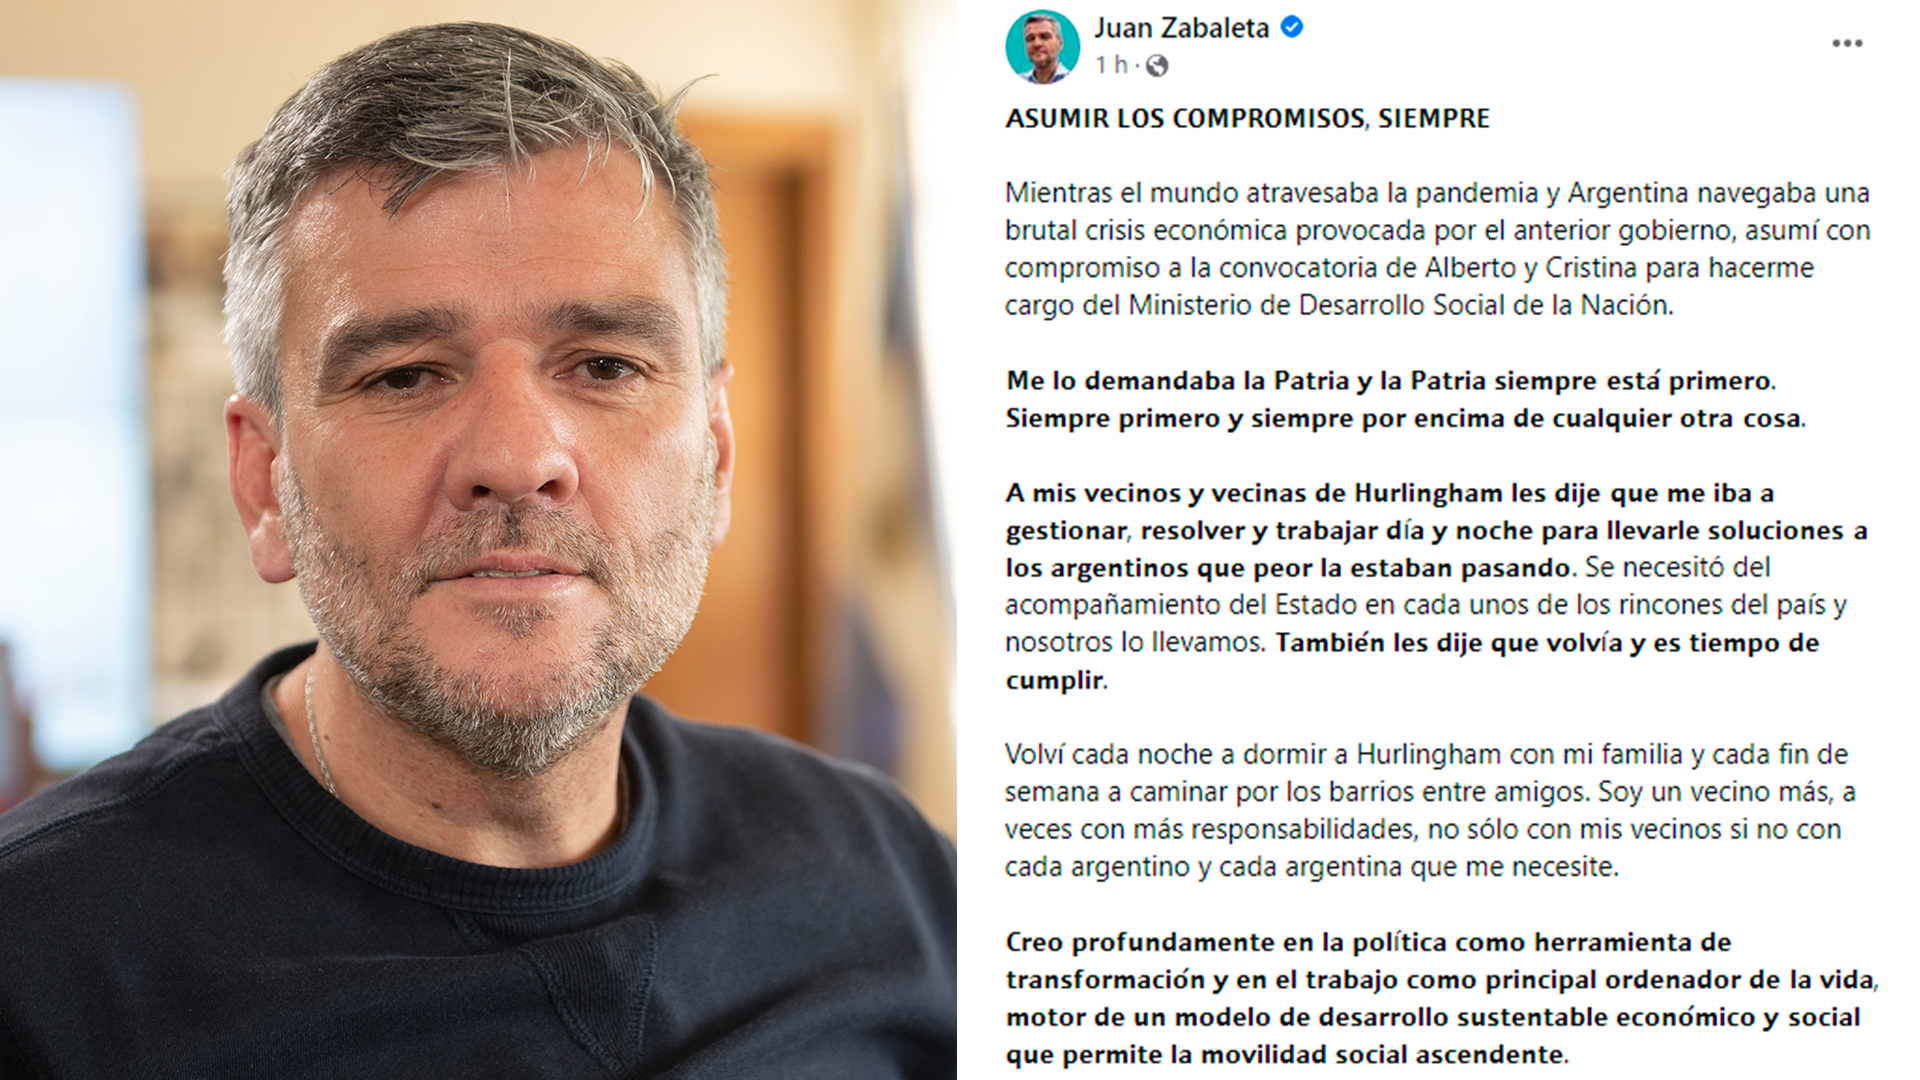 La carta de despedida del ahora ex ministro Juan Zabaleta